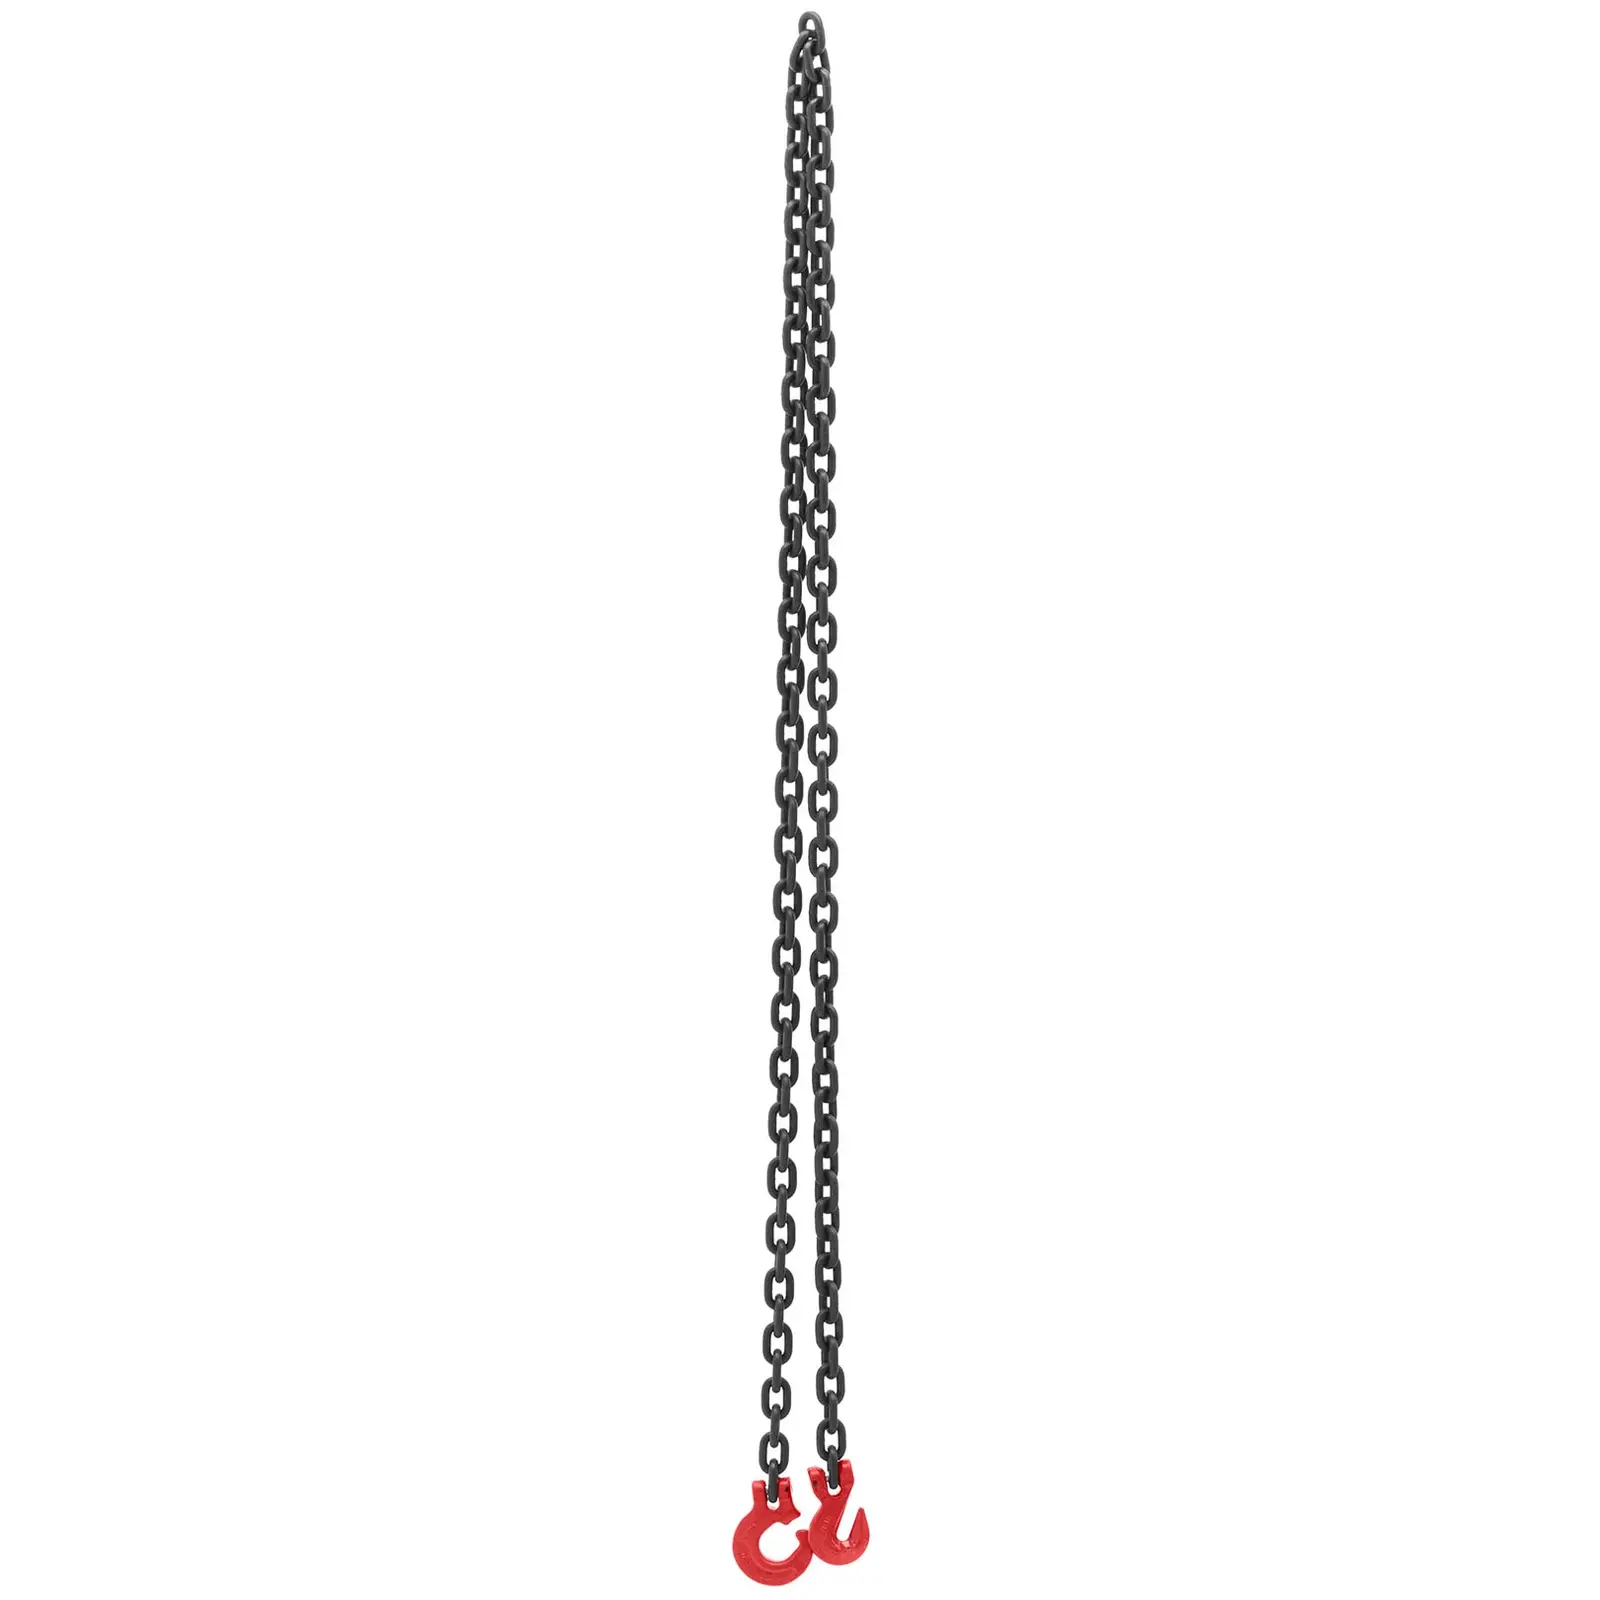 Løftekjede - 2000 kg - 2 x 2,5 m - svart/rød